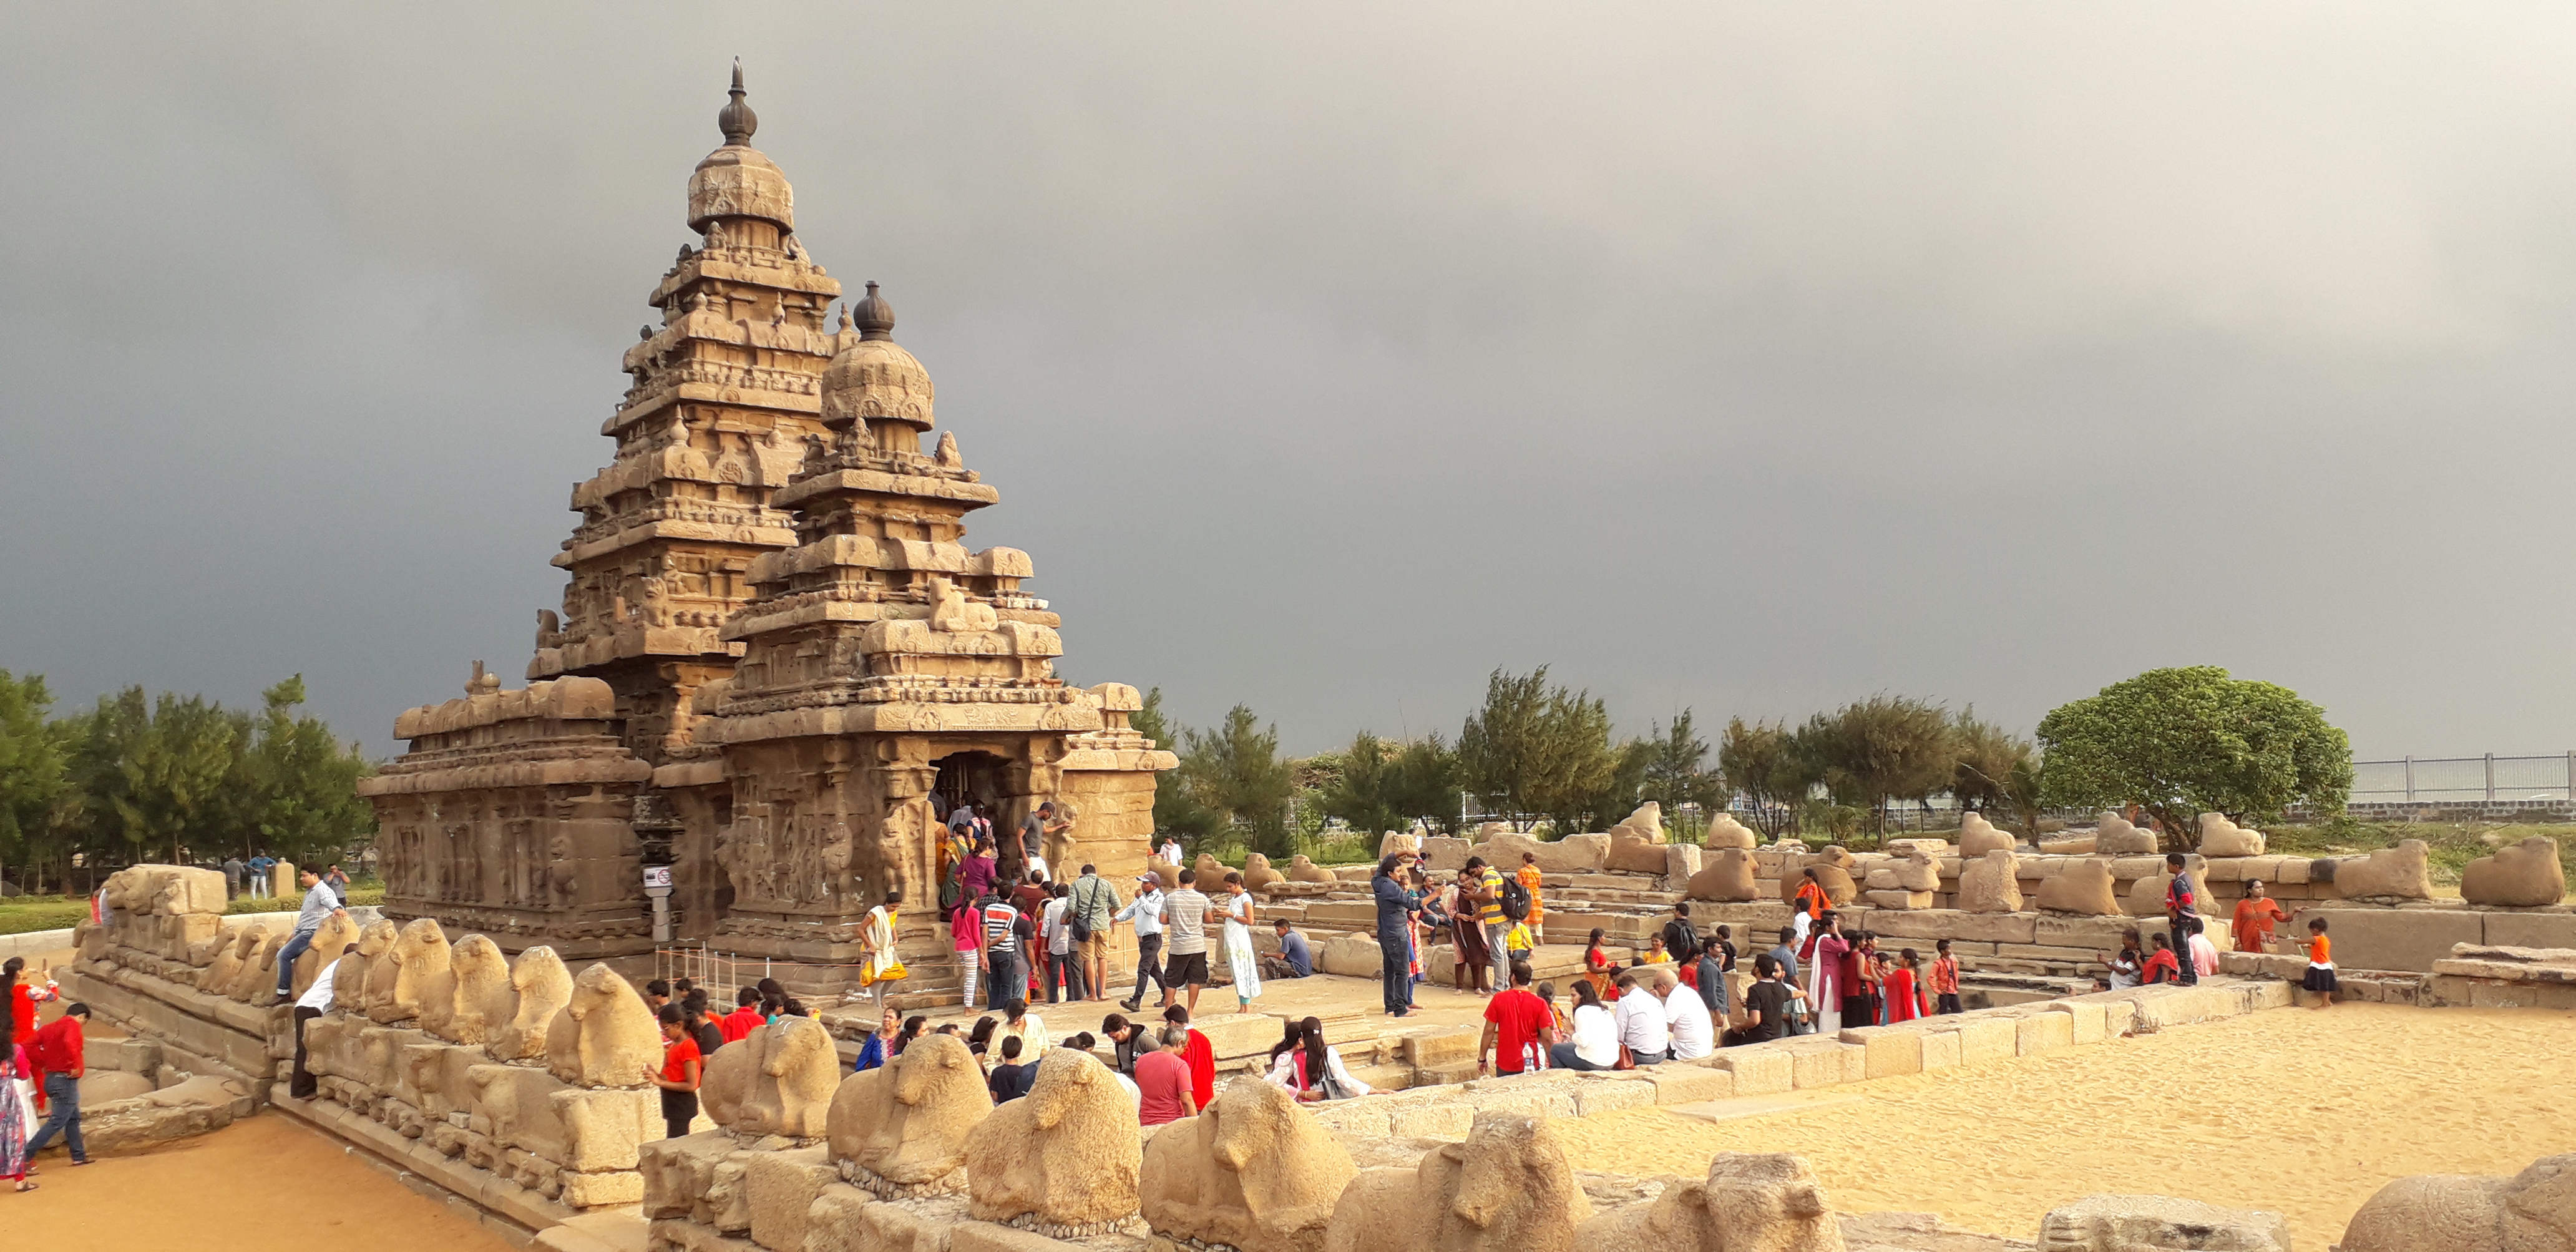 Pondicherry with Mahabalipuram tour